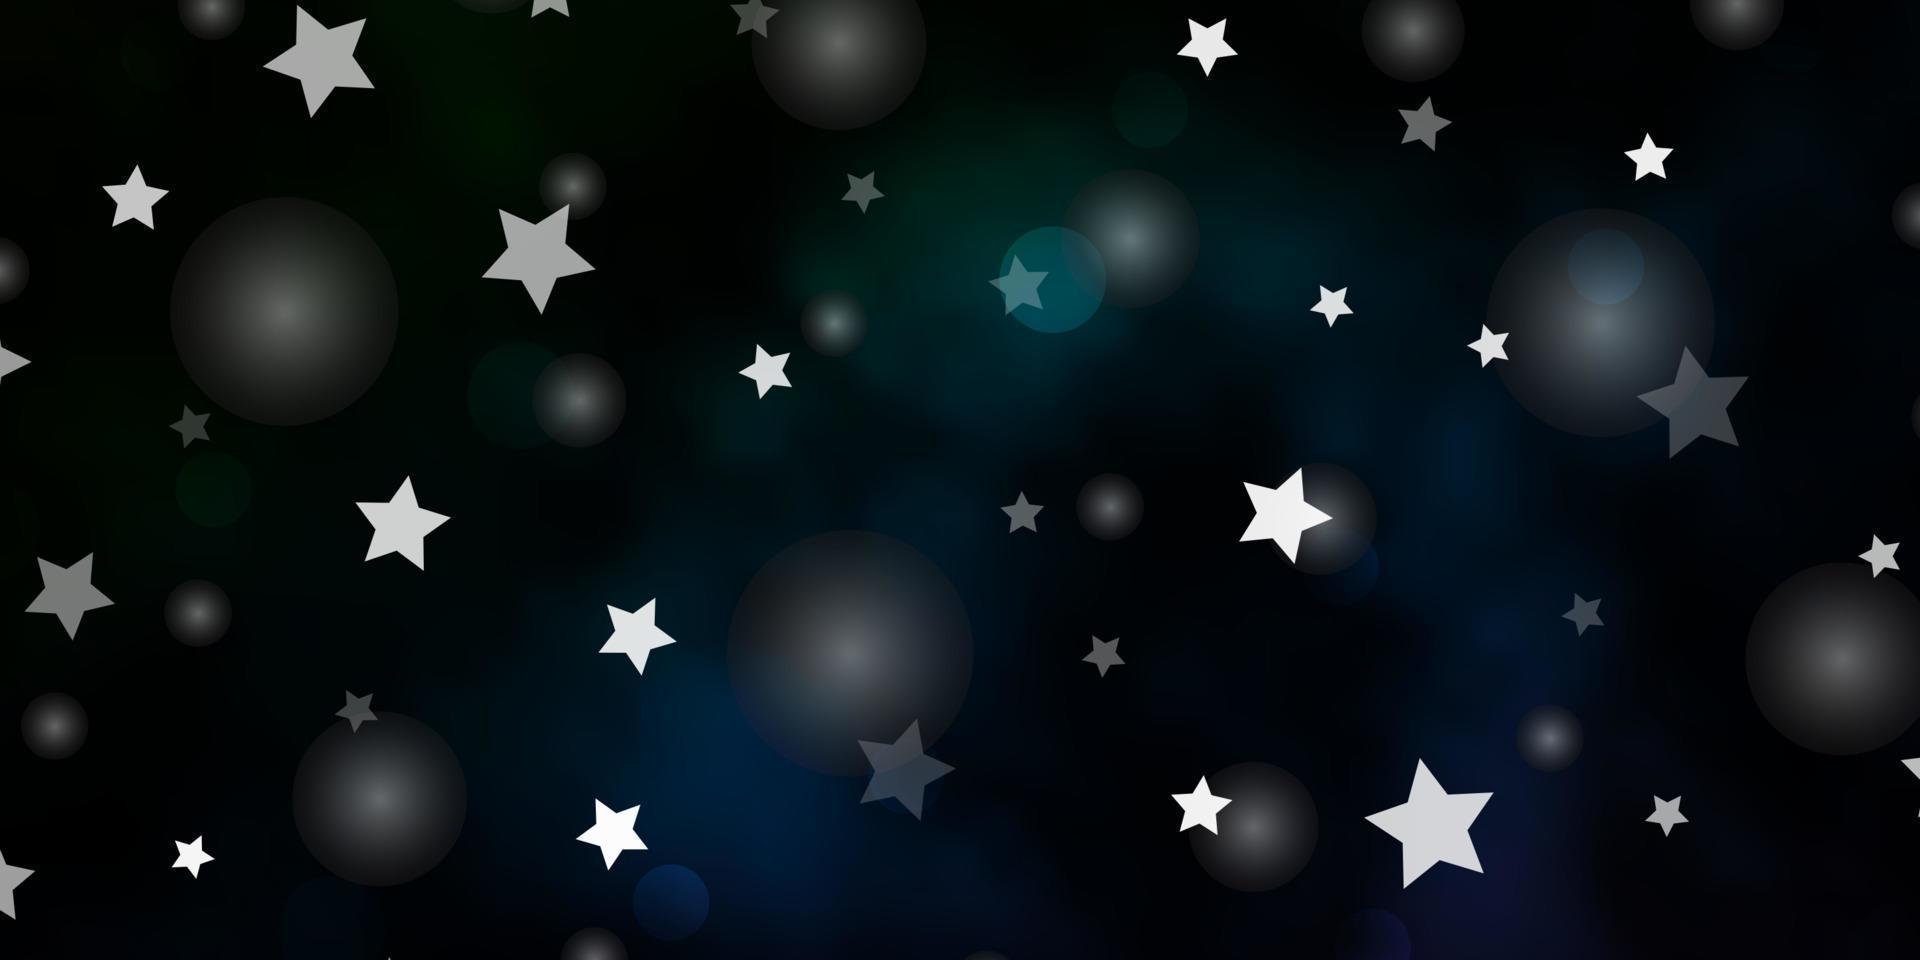 mörkblå, grön vektorbakgrund med cirklar, stjärnor. vektor